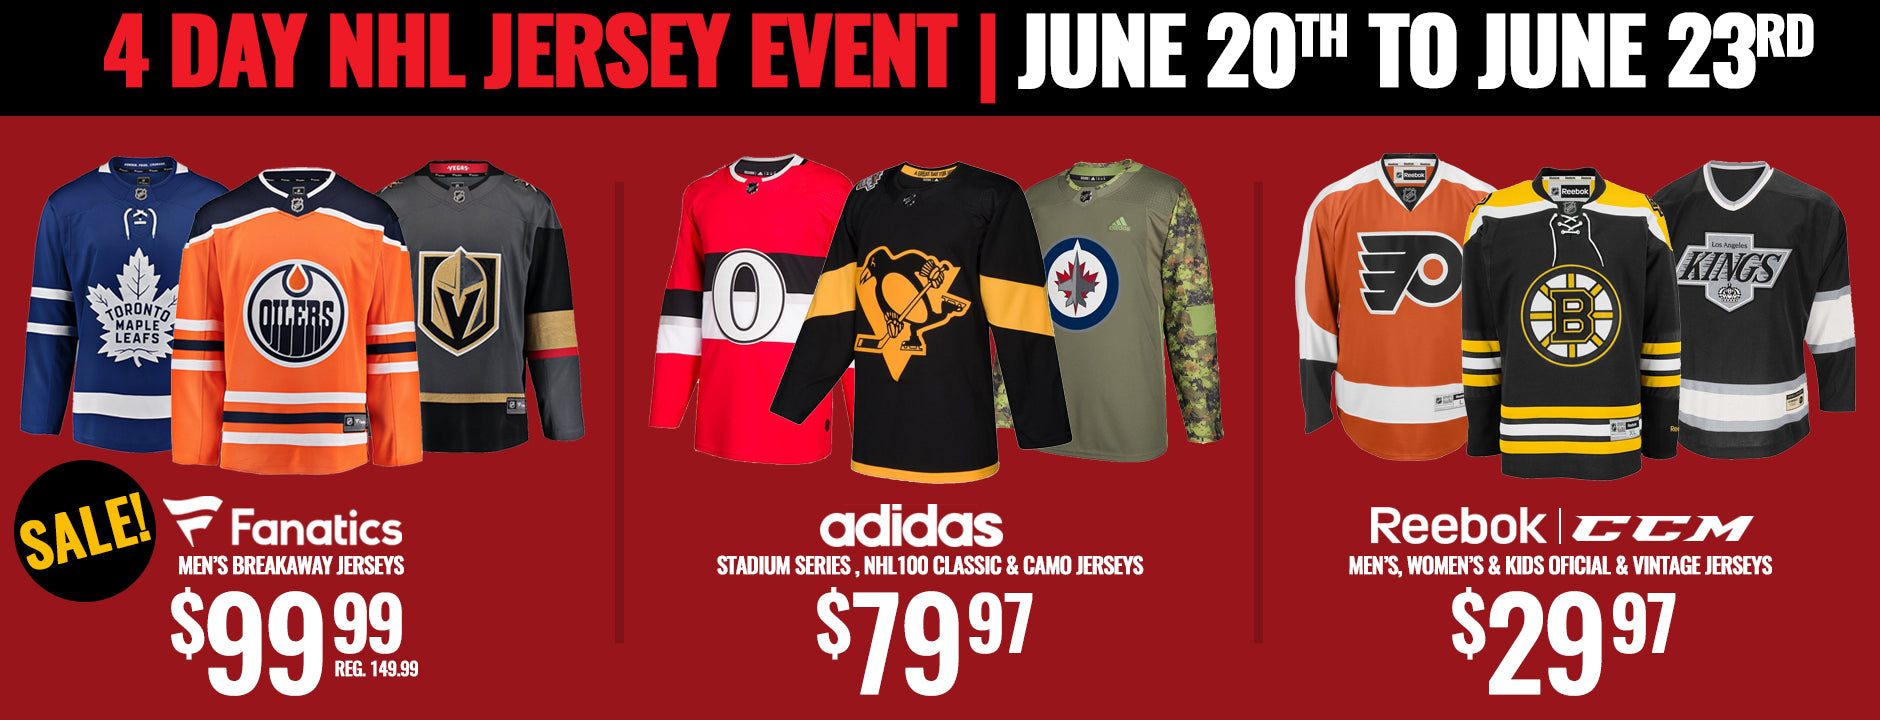 4-Day Jersey Event: Reebok NHL Jerseys